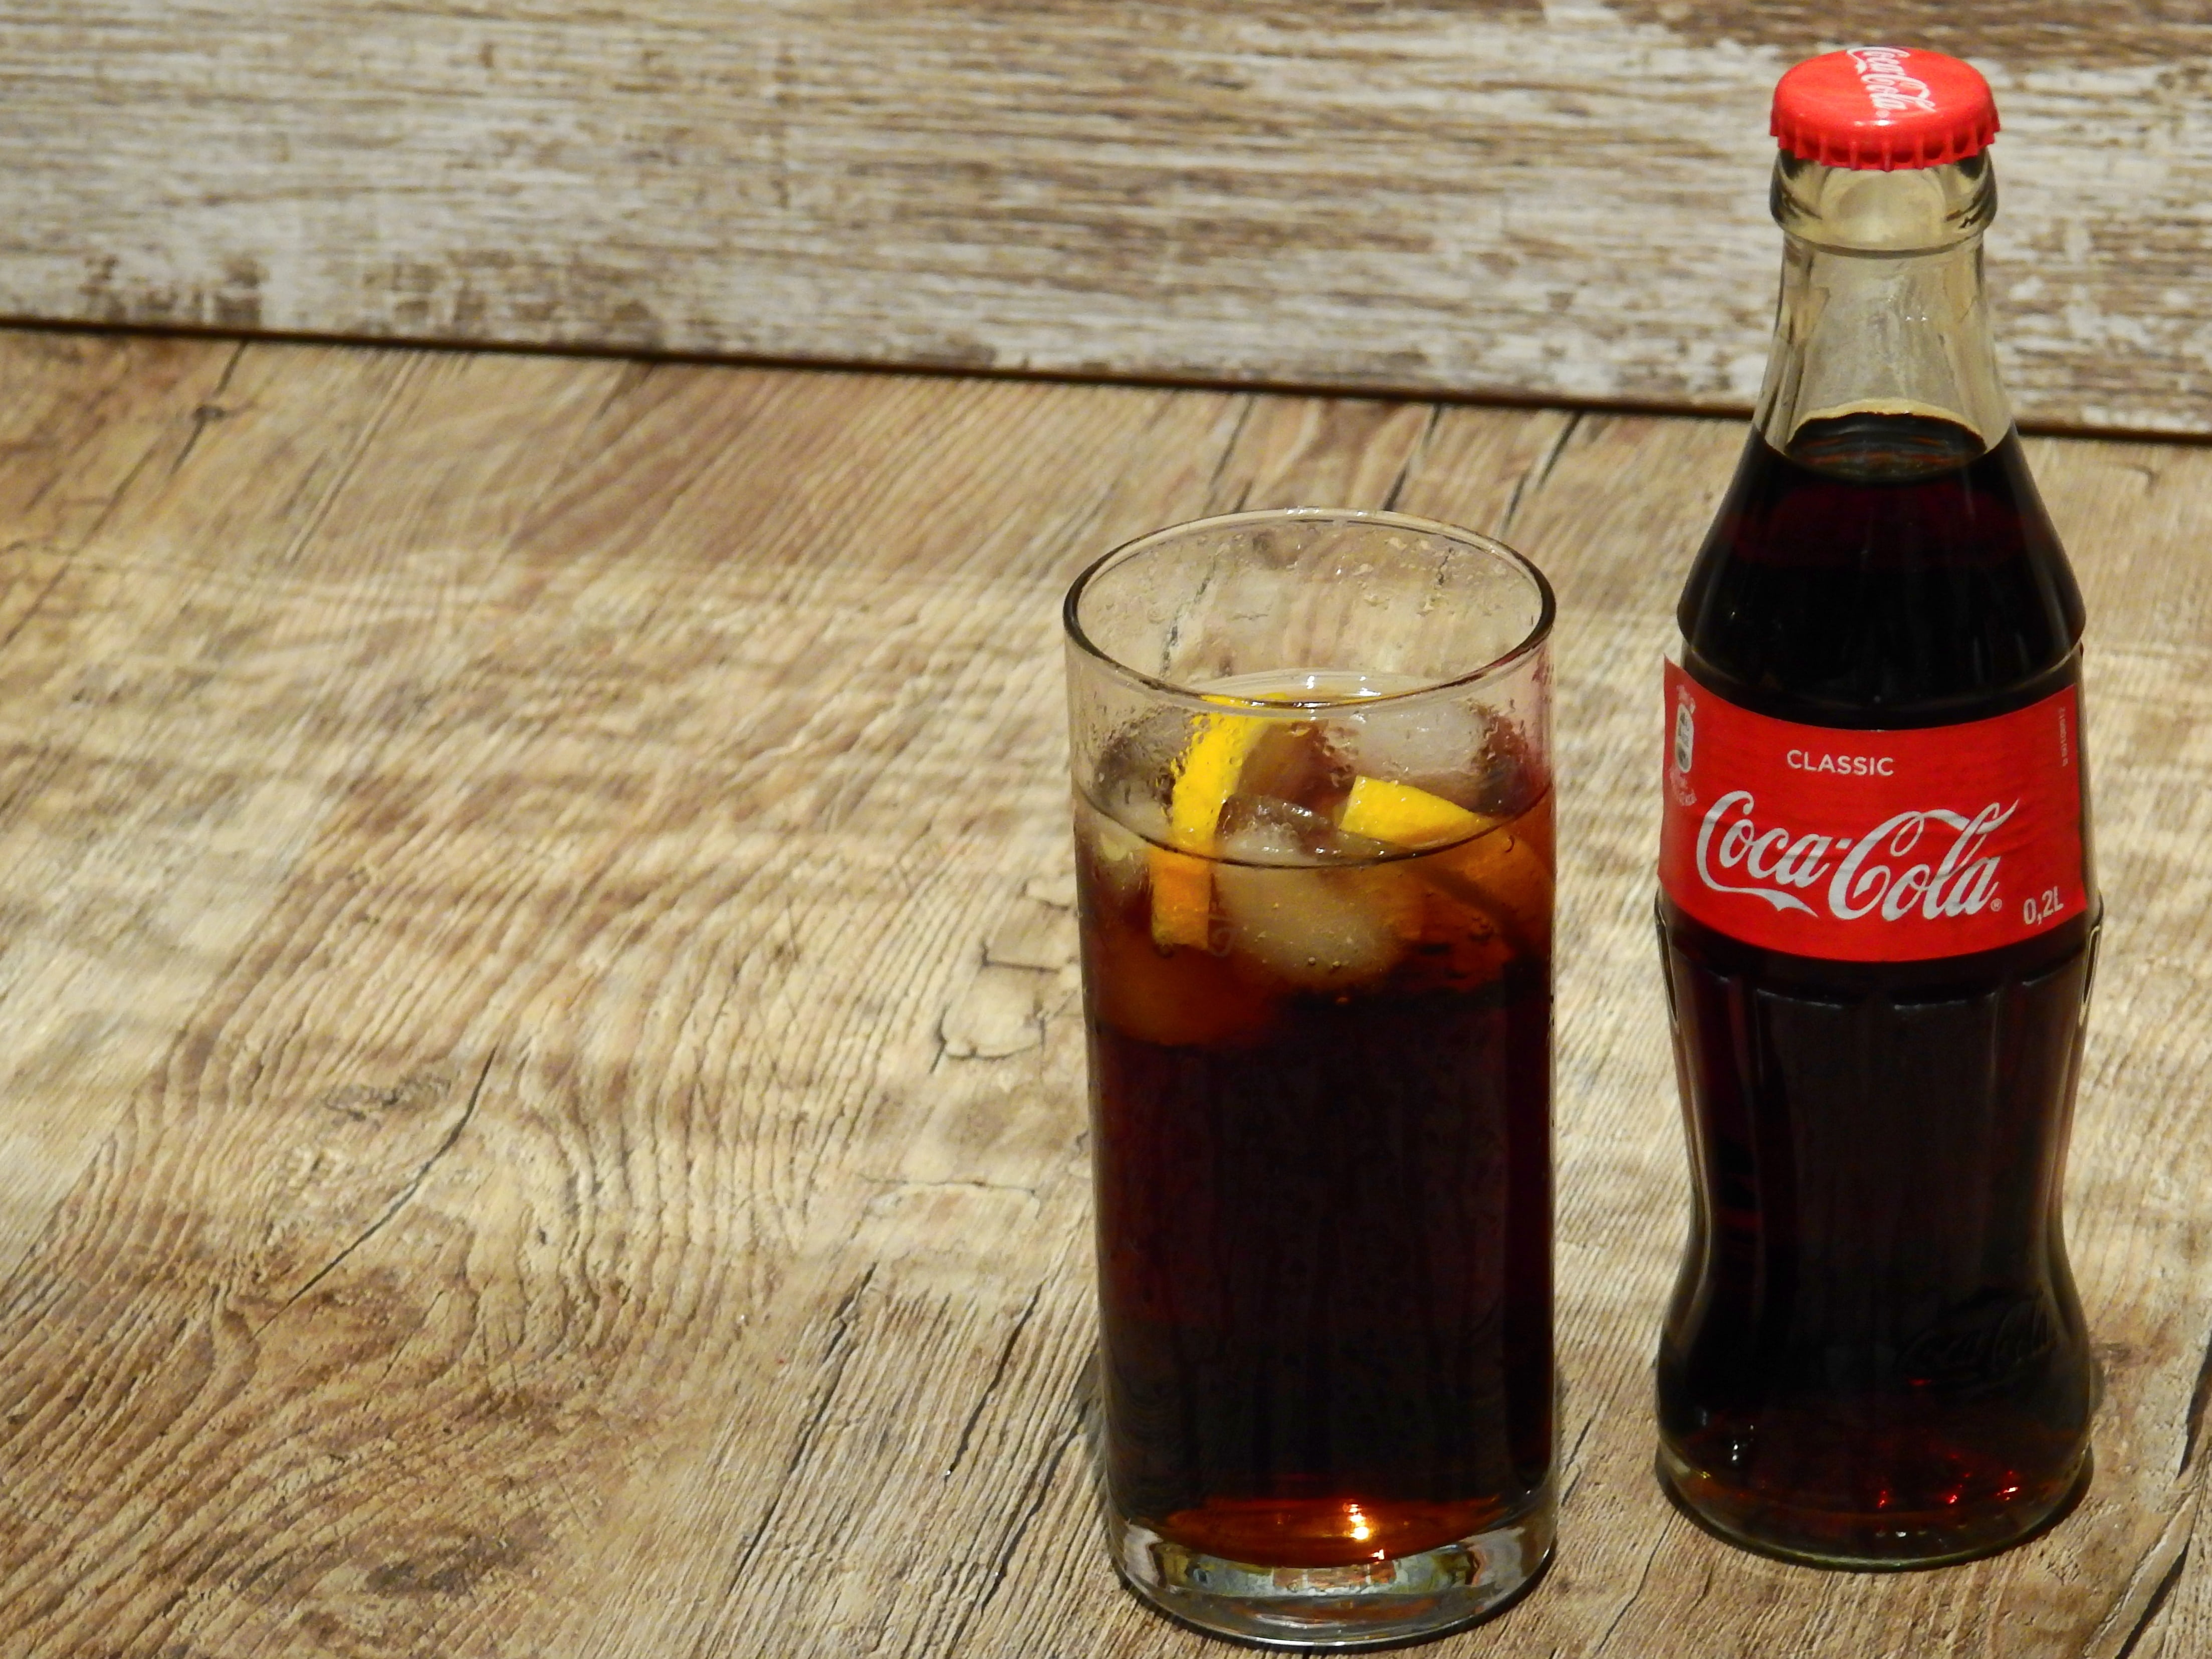 Coca-Cola soda bottle and drinking glass, coca cola, coke, brand